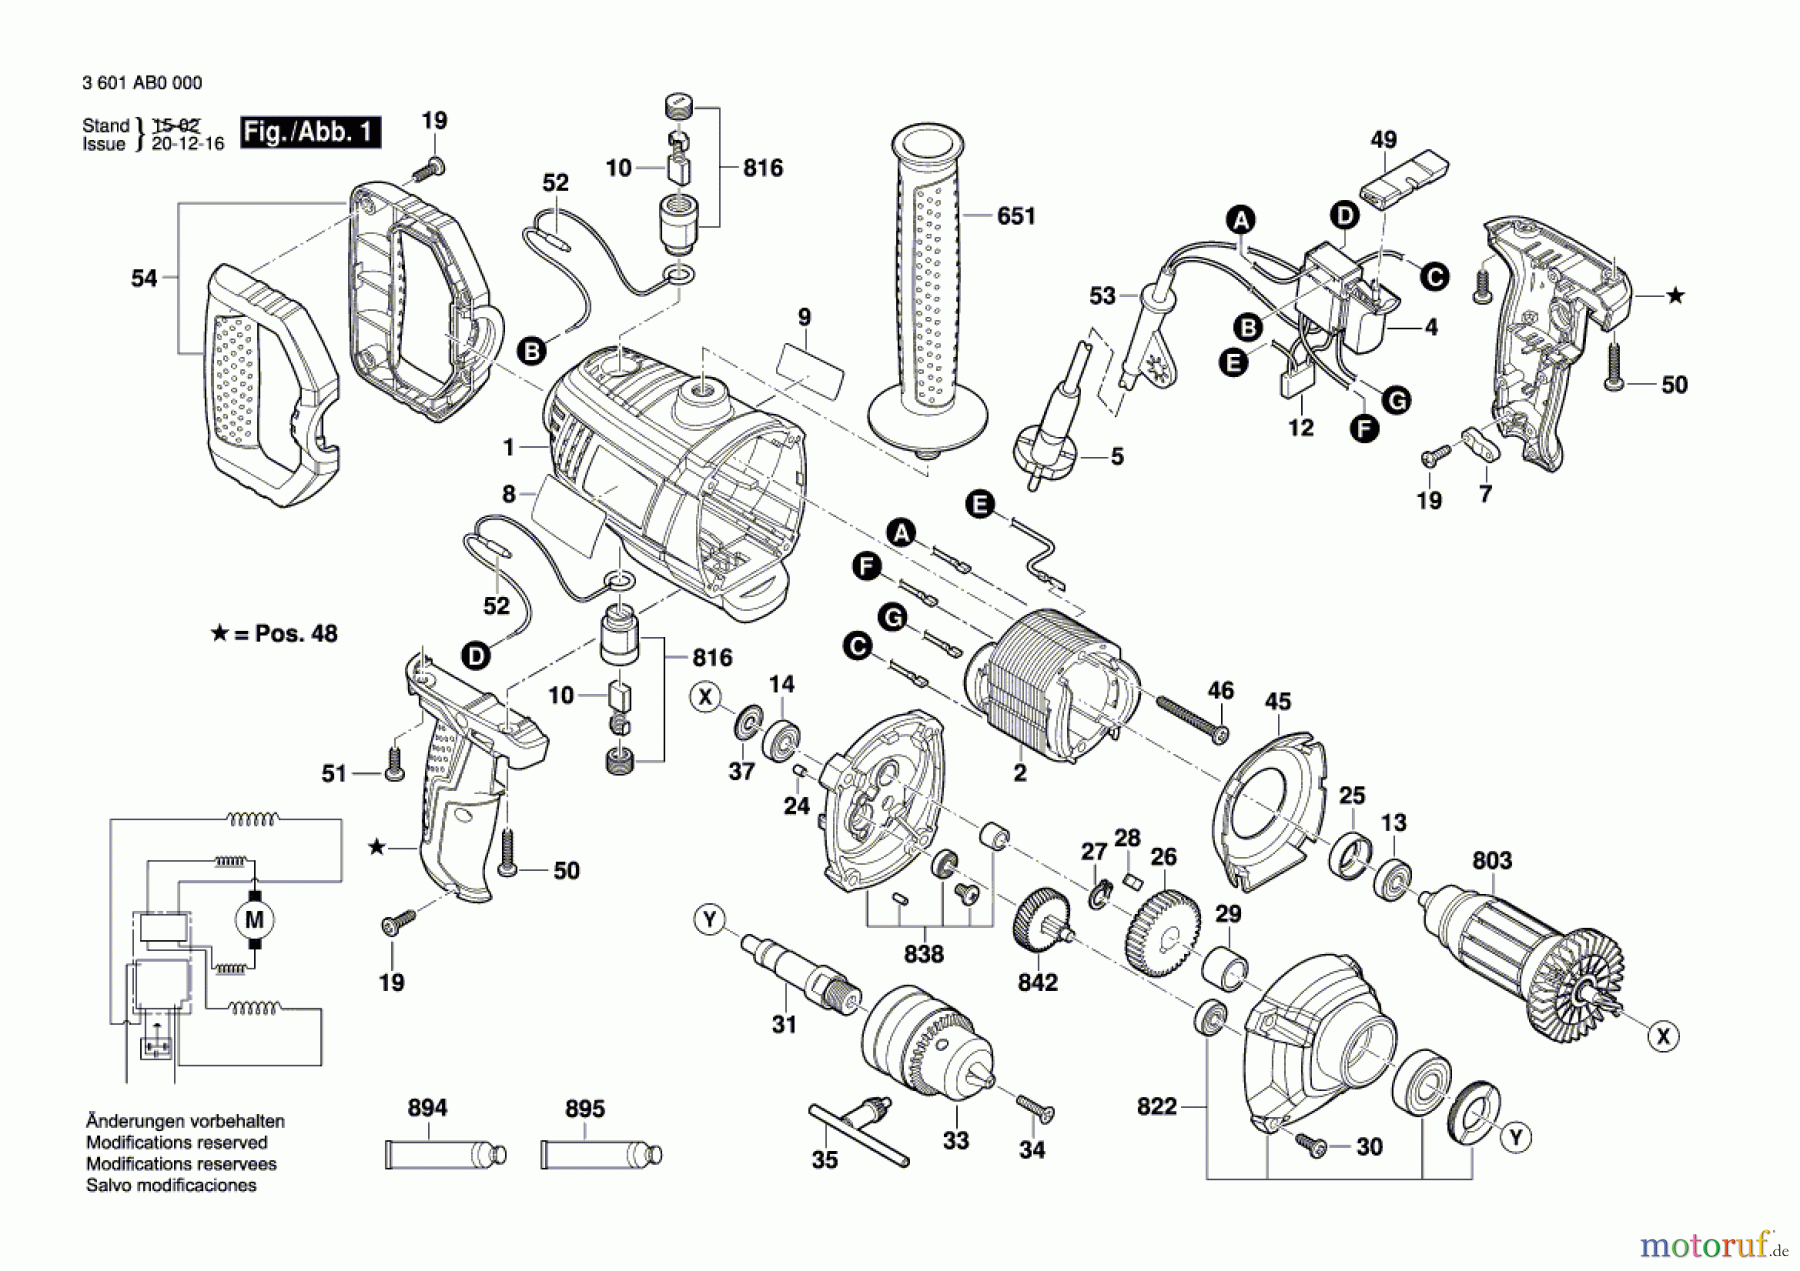  Bosch Werkzeug Bohrmaschine GBM 1600 RE Seite 1